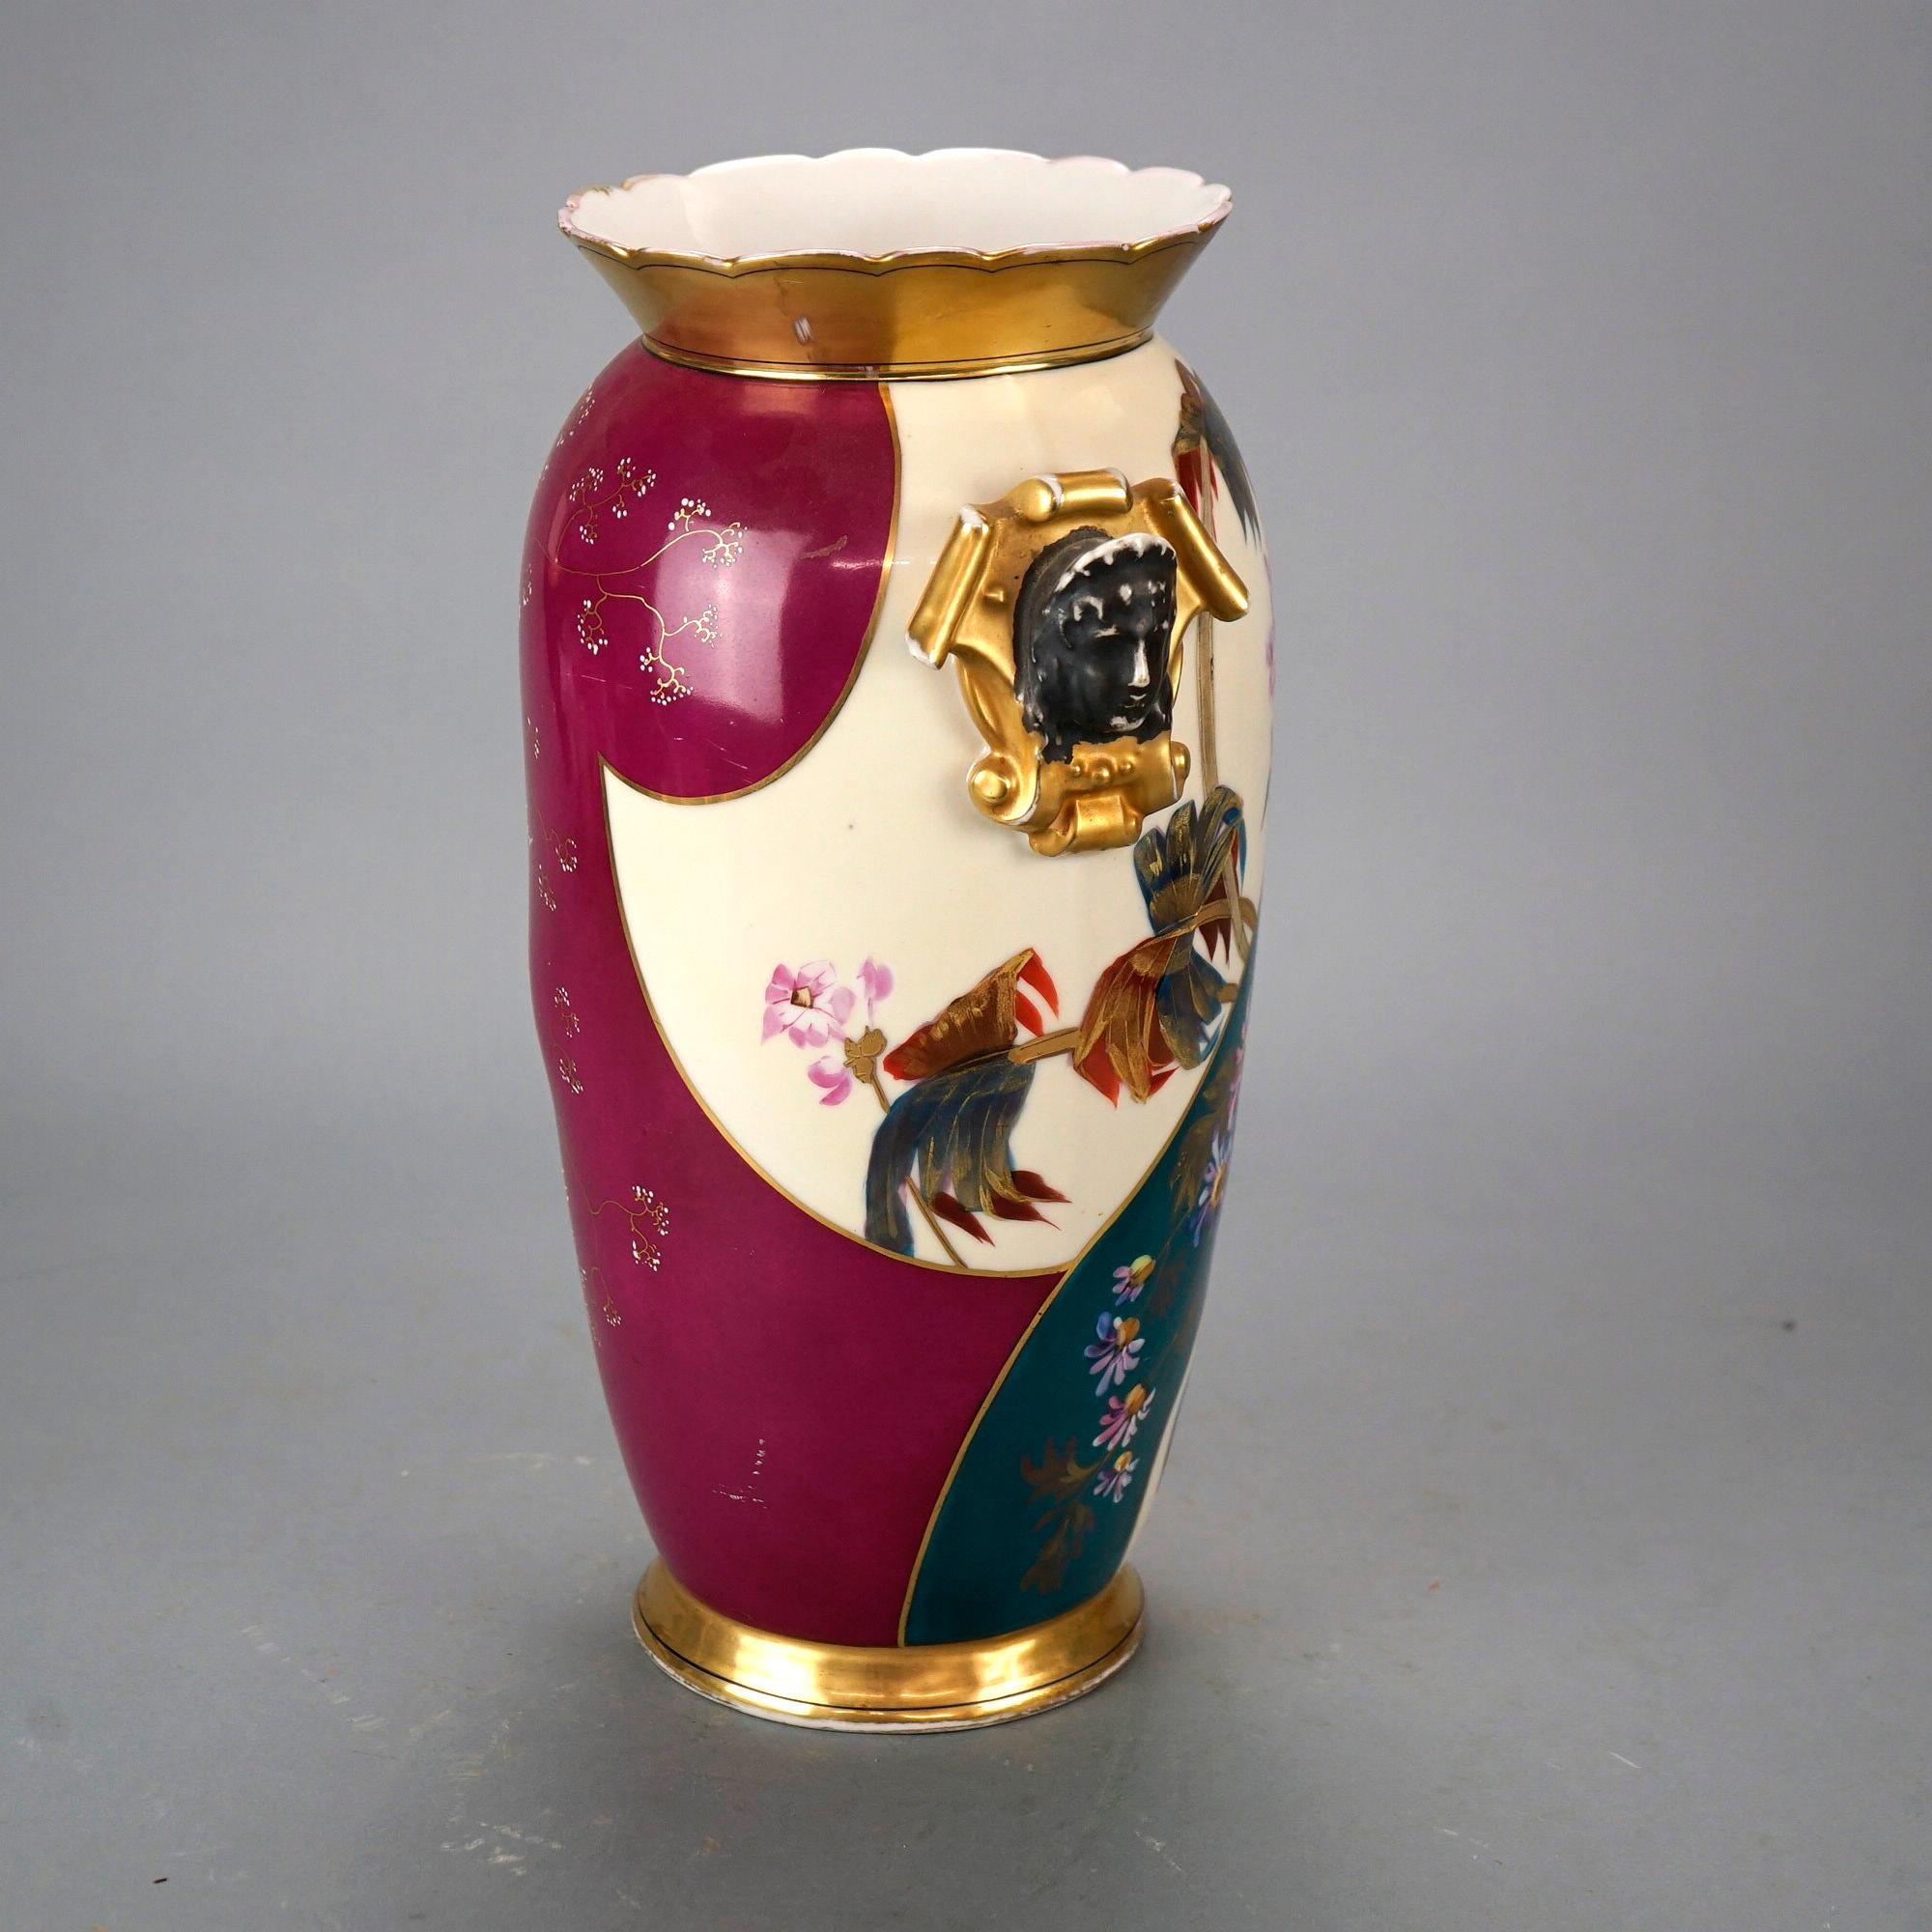 Un vase figuratif ancien français du Vieux Paris offre une construction en porcelaine avec des éléments floraux peints à la main et des rehauts de dorure partout, des poignées en forme de bouclier avec des masques masculins classiques, une marque de